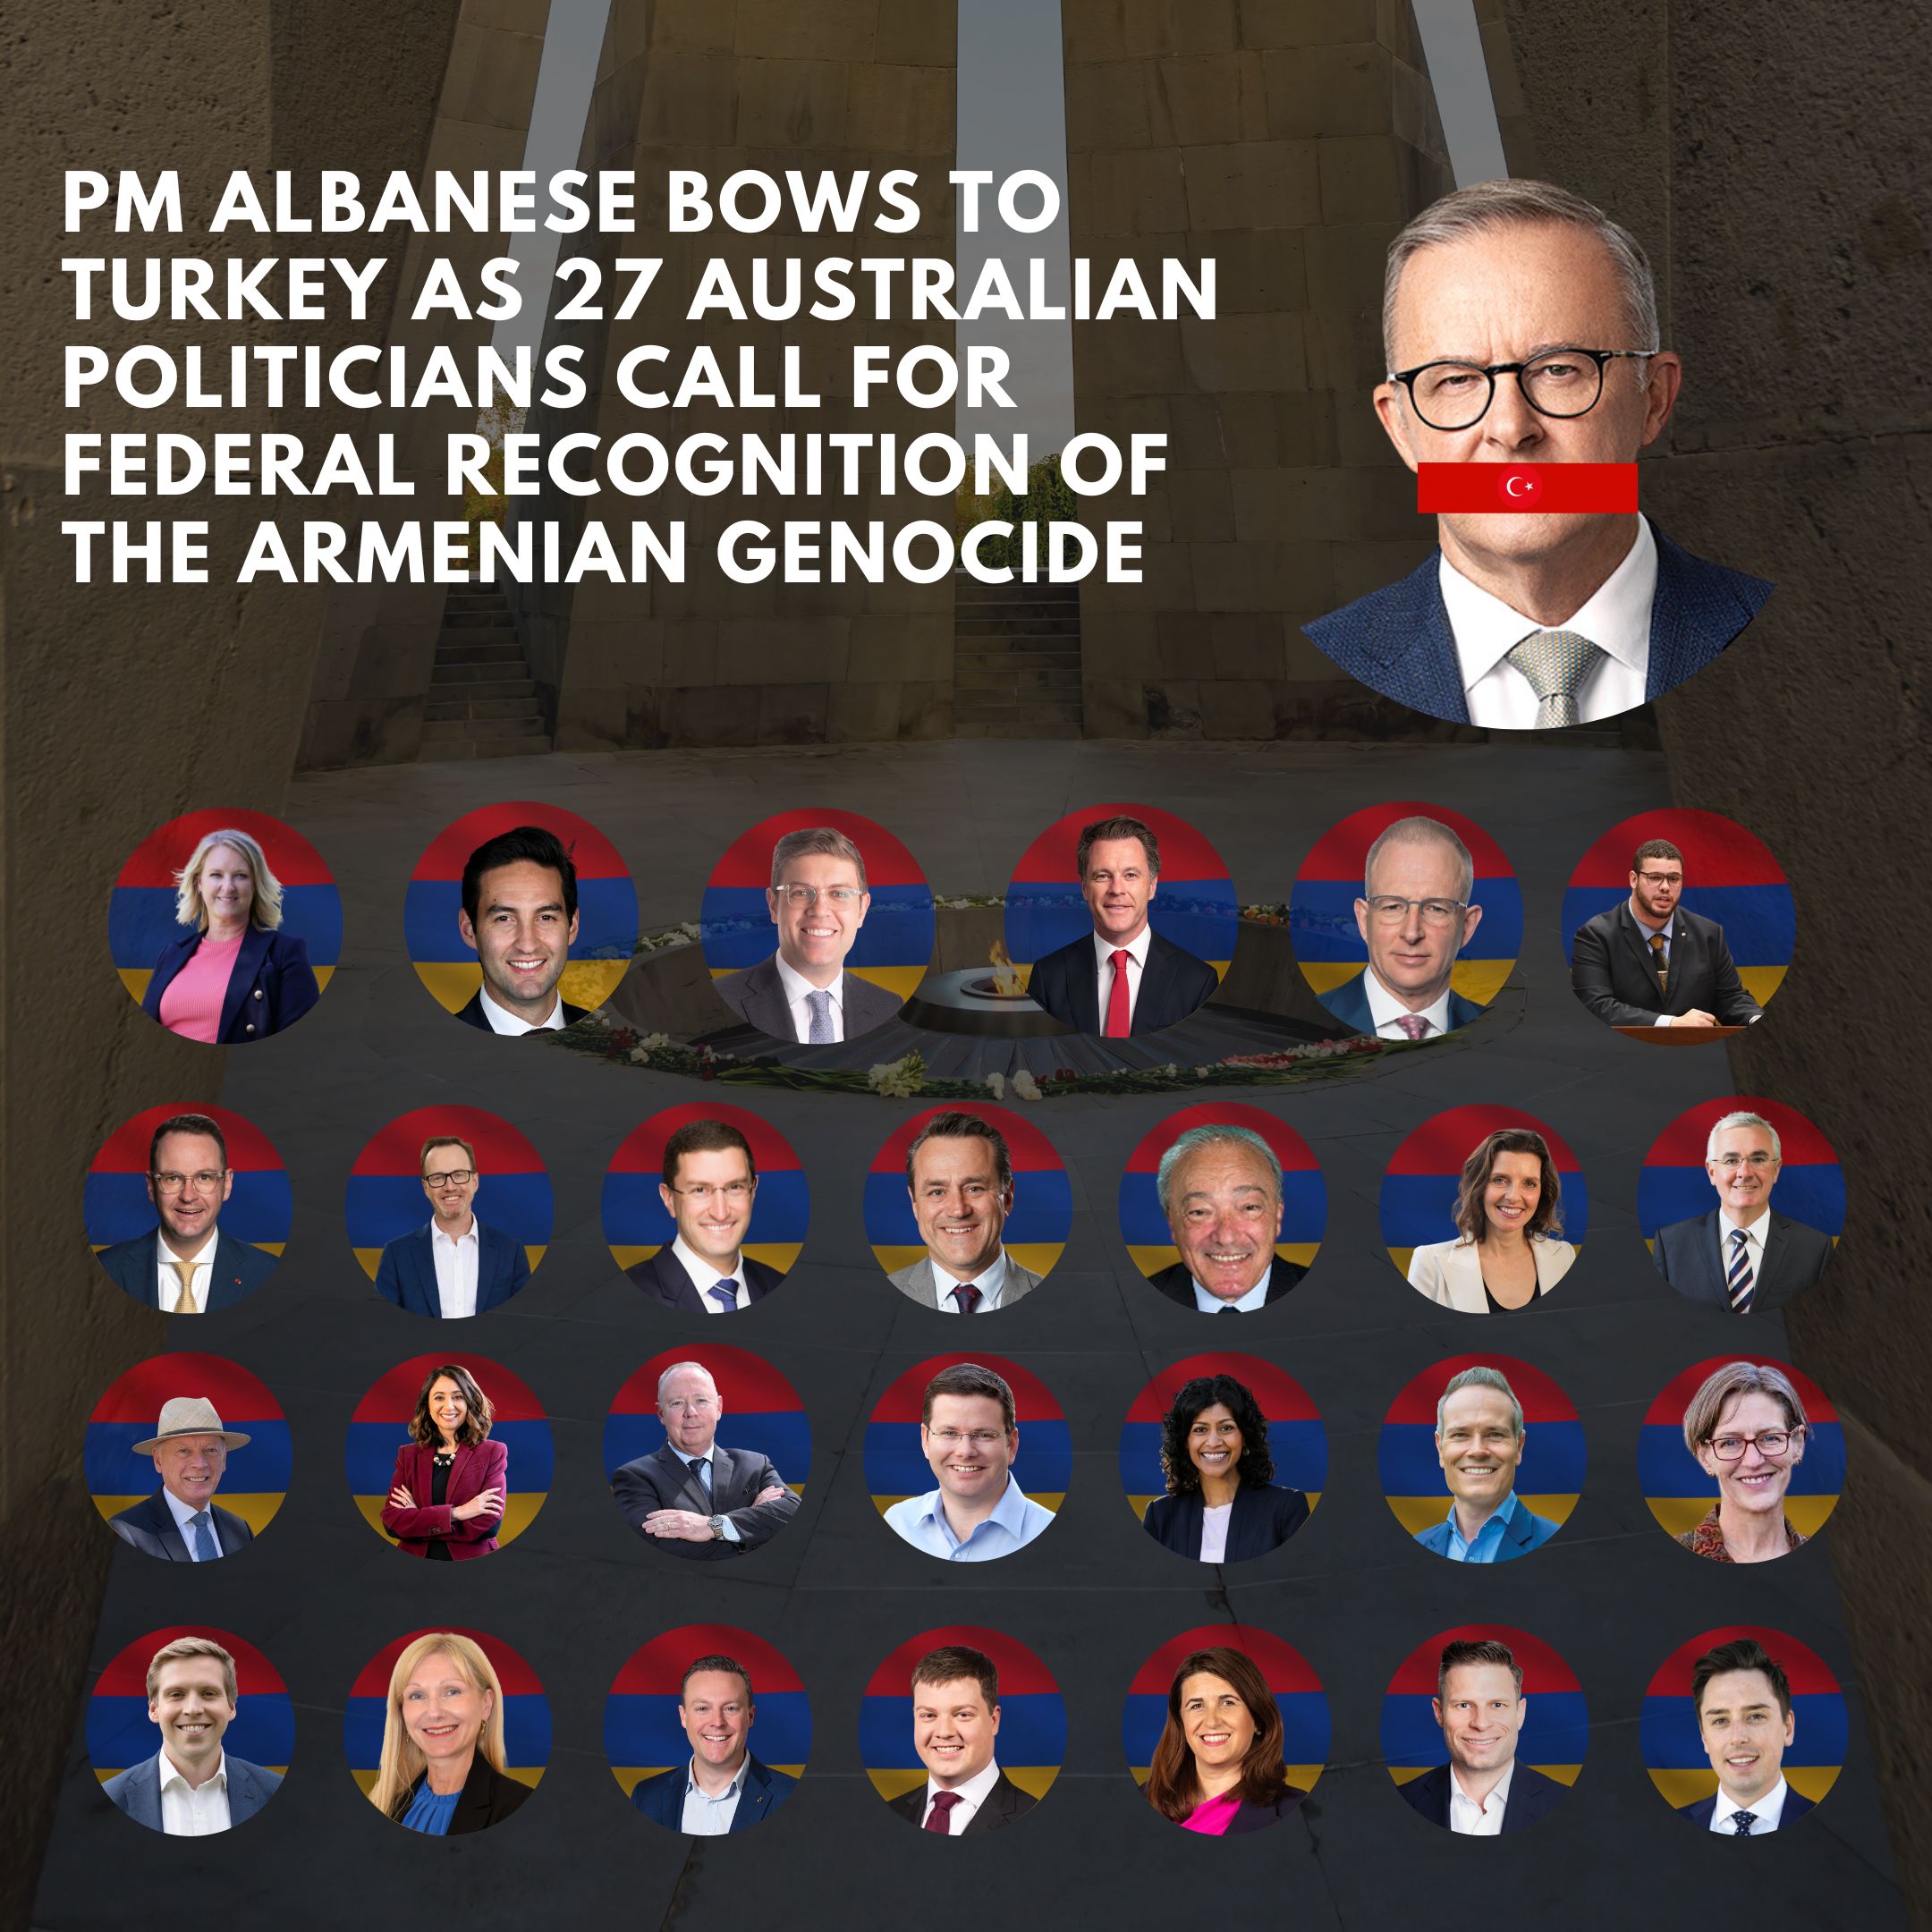 Başbakan Anthony Albanese, rekor sayıda Avustralyalı parlamenterin Ermeni Soykırımı’nın federal olarak tanınması çağrısı yapmasına rağmen Türkiye’ye boyun eğdi – Basın Bültenleri – Haberler |